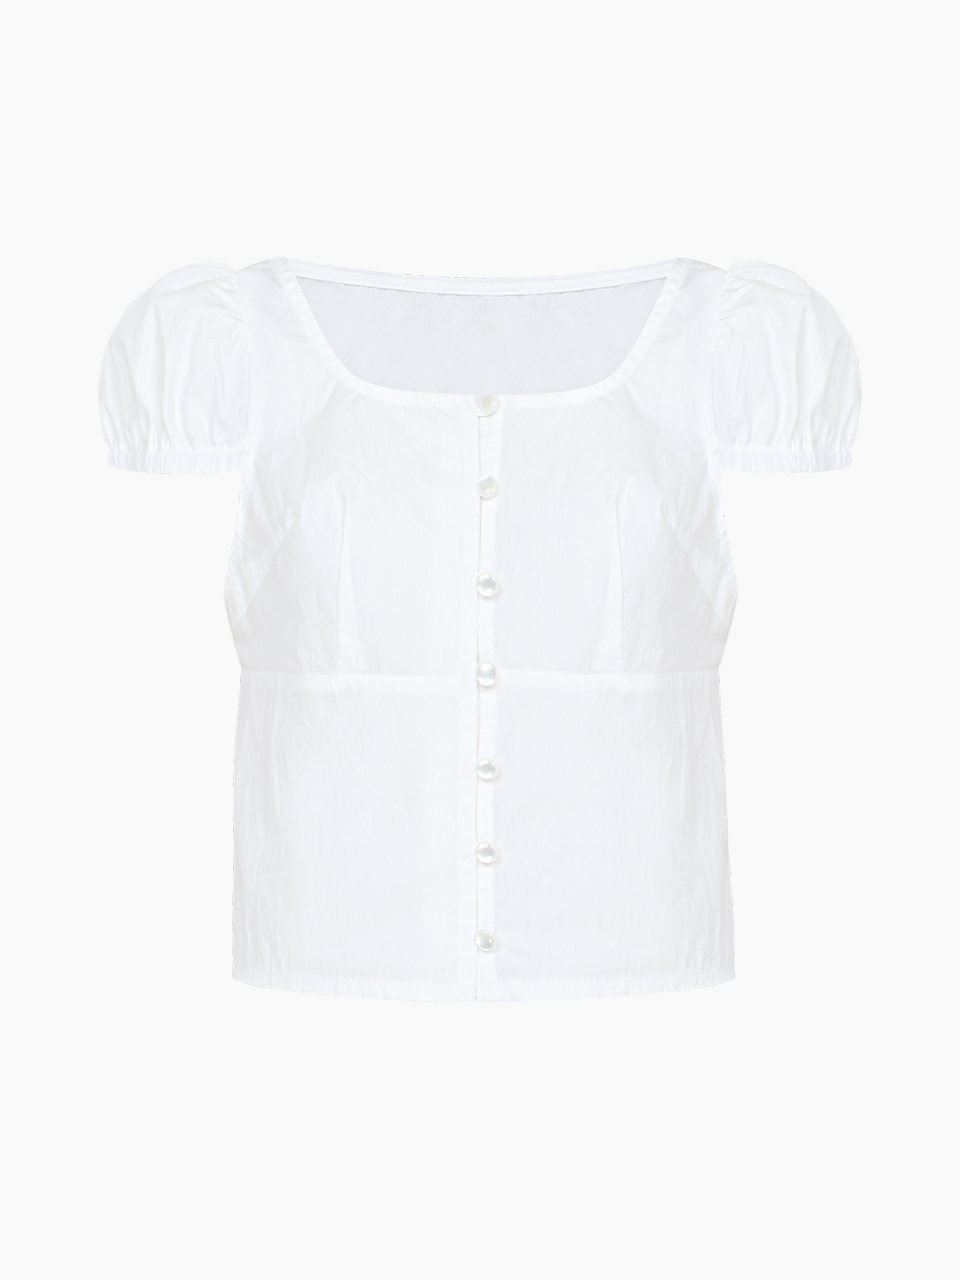 bebe blouse top - white